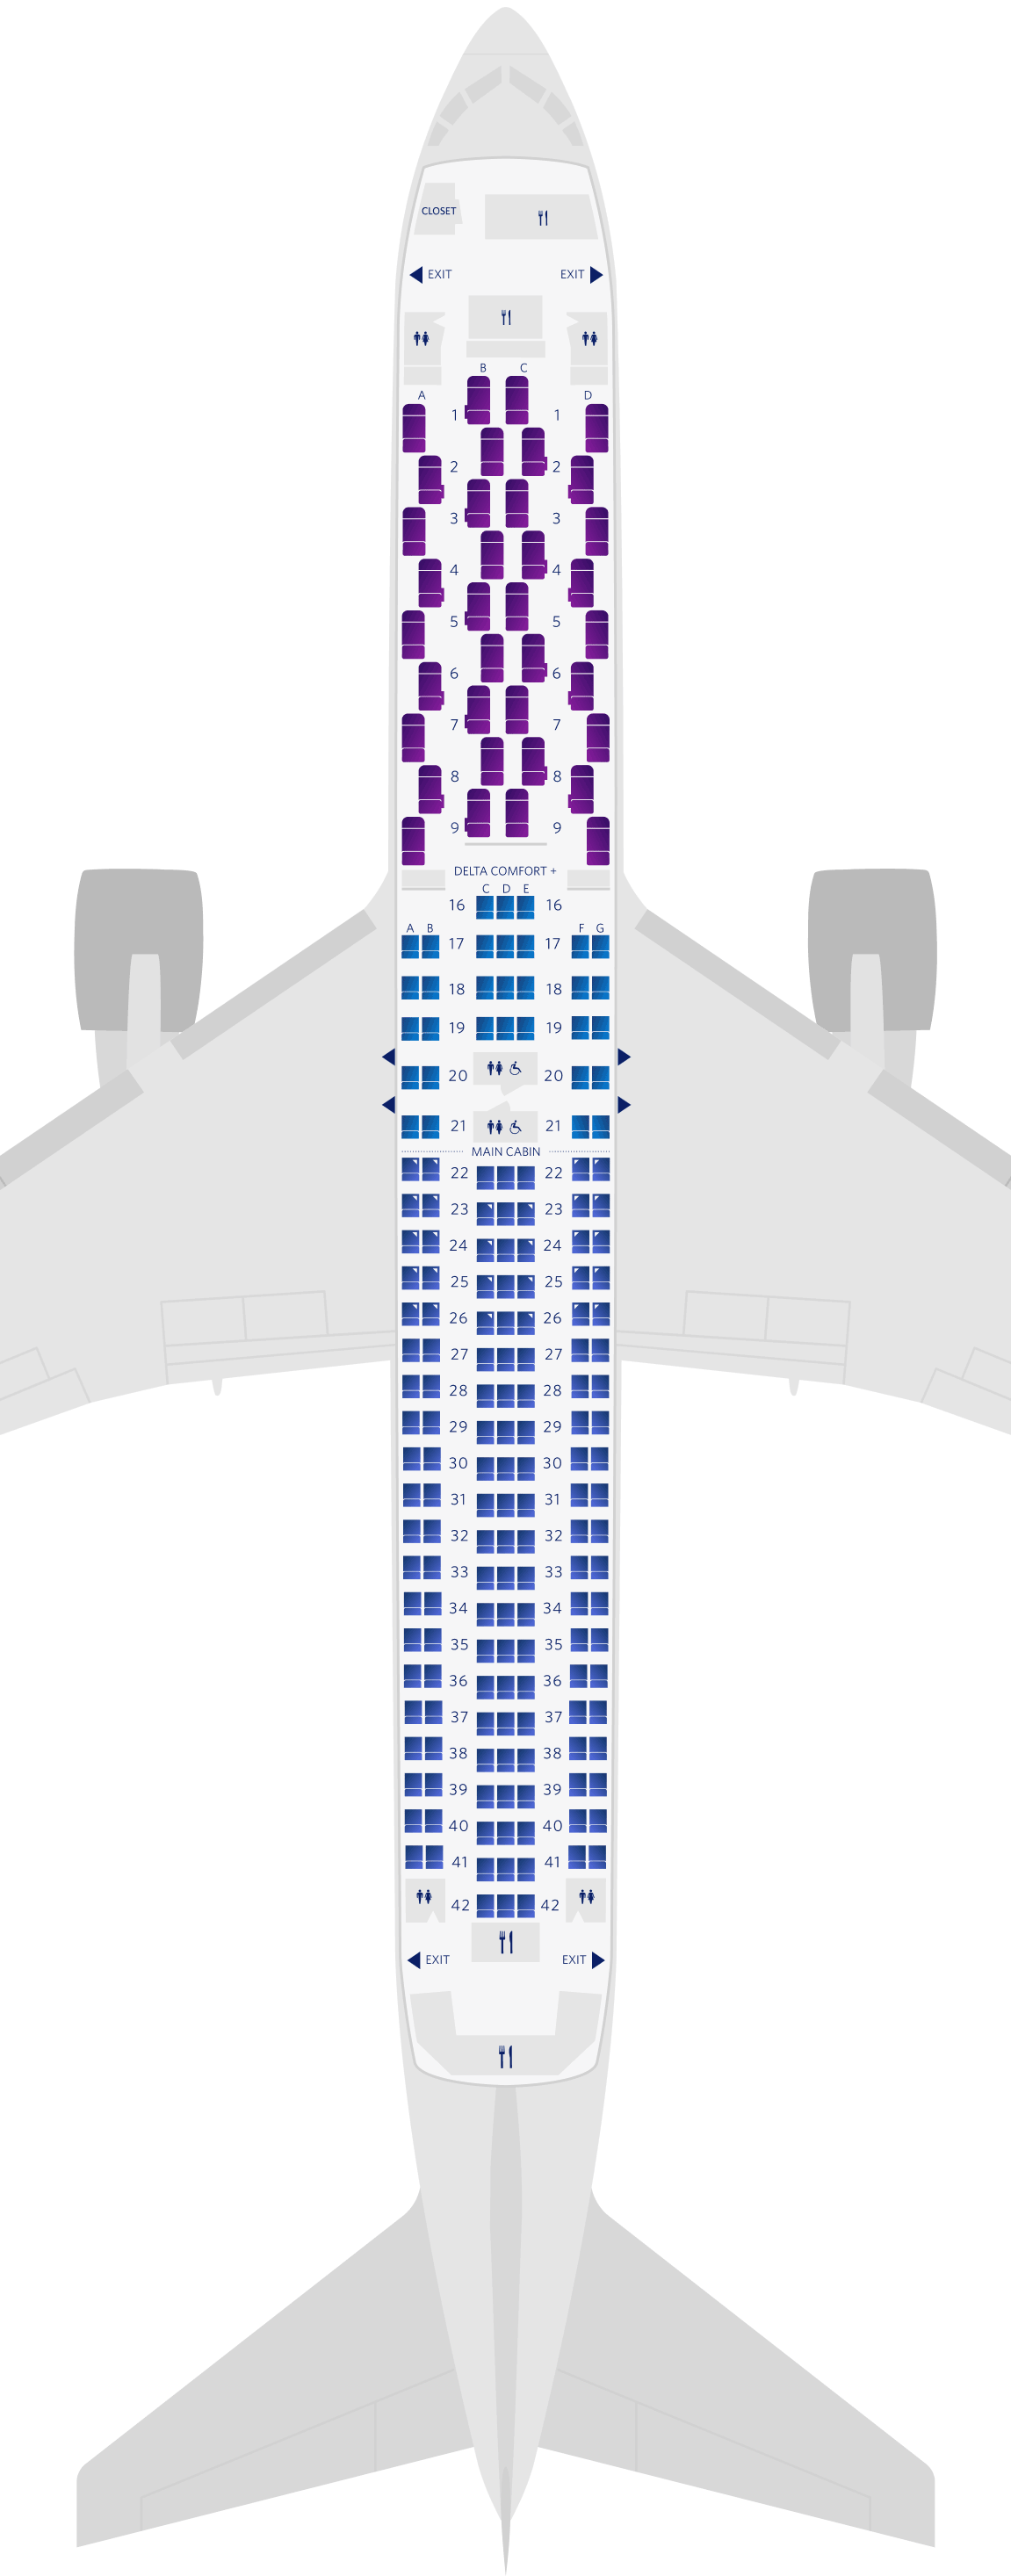 보잉 767-300ER (76L) 좌석 배치도